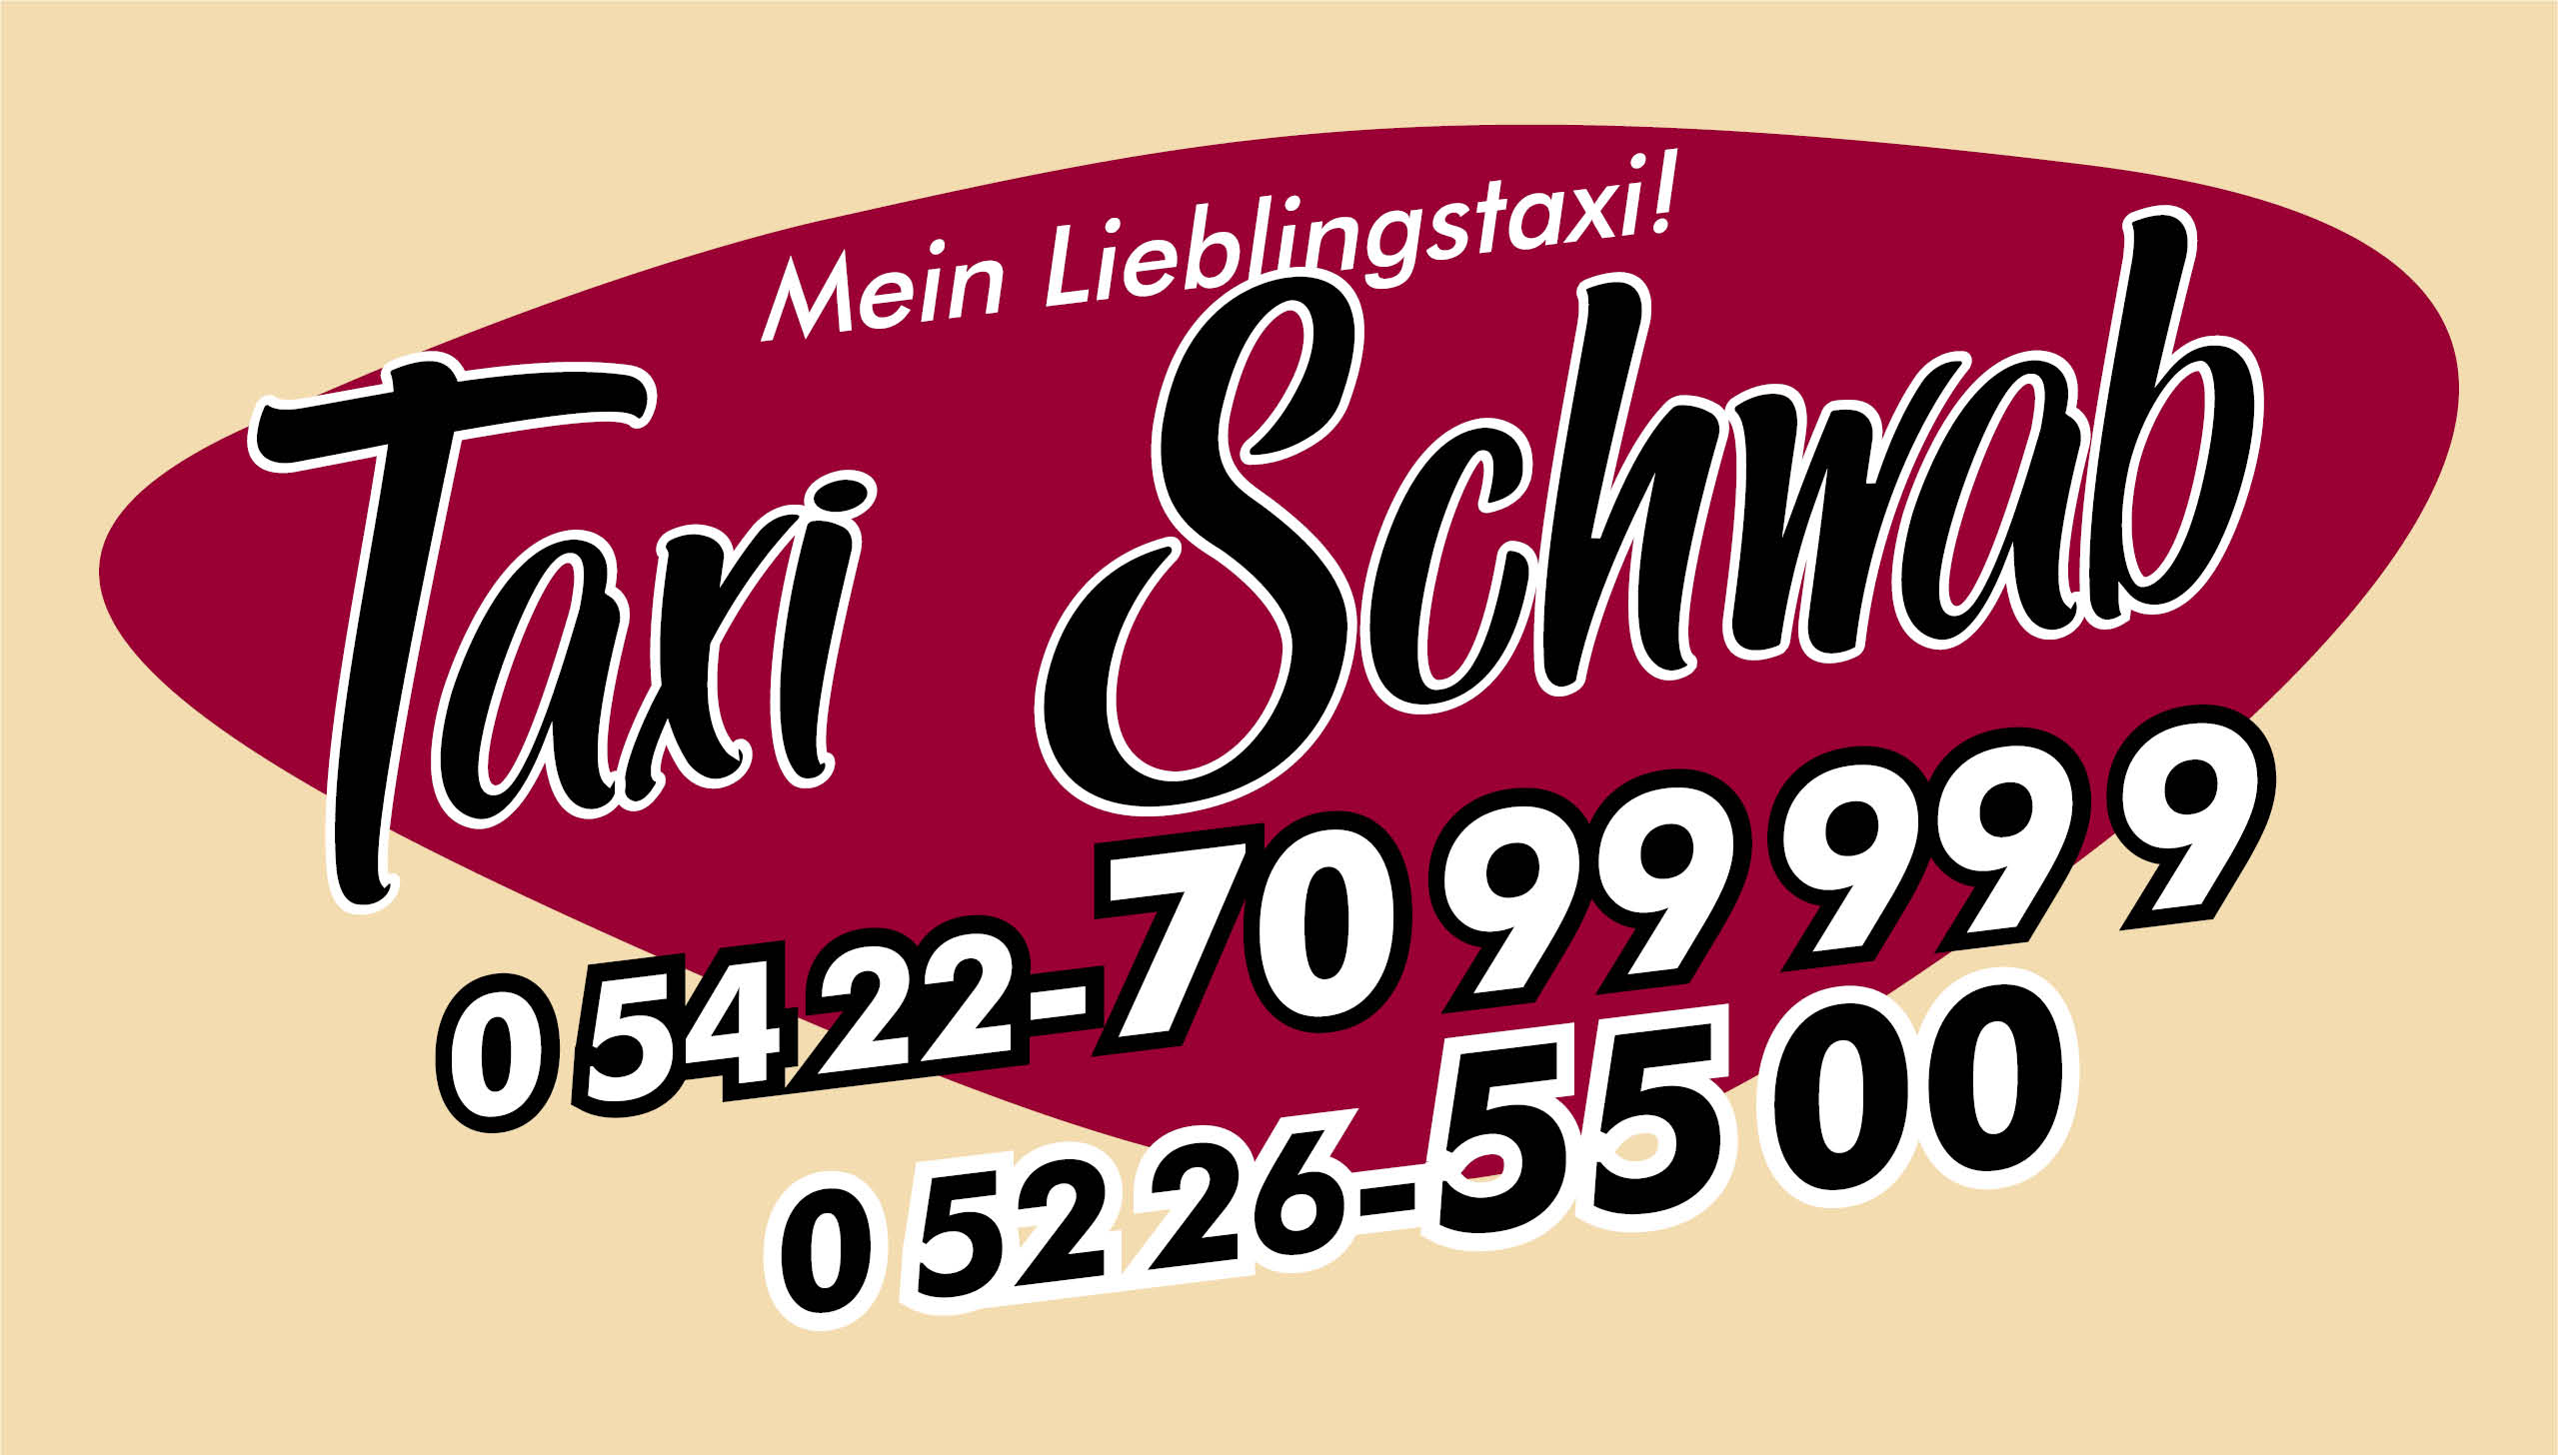 Taxi Schwab